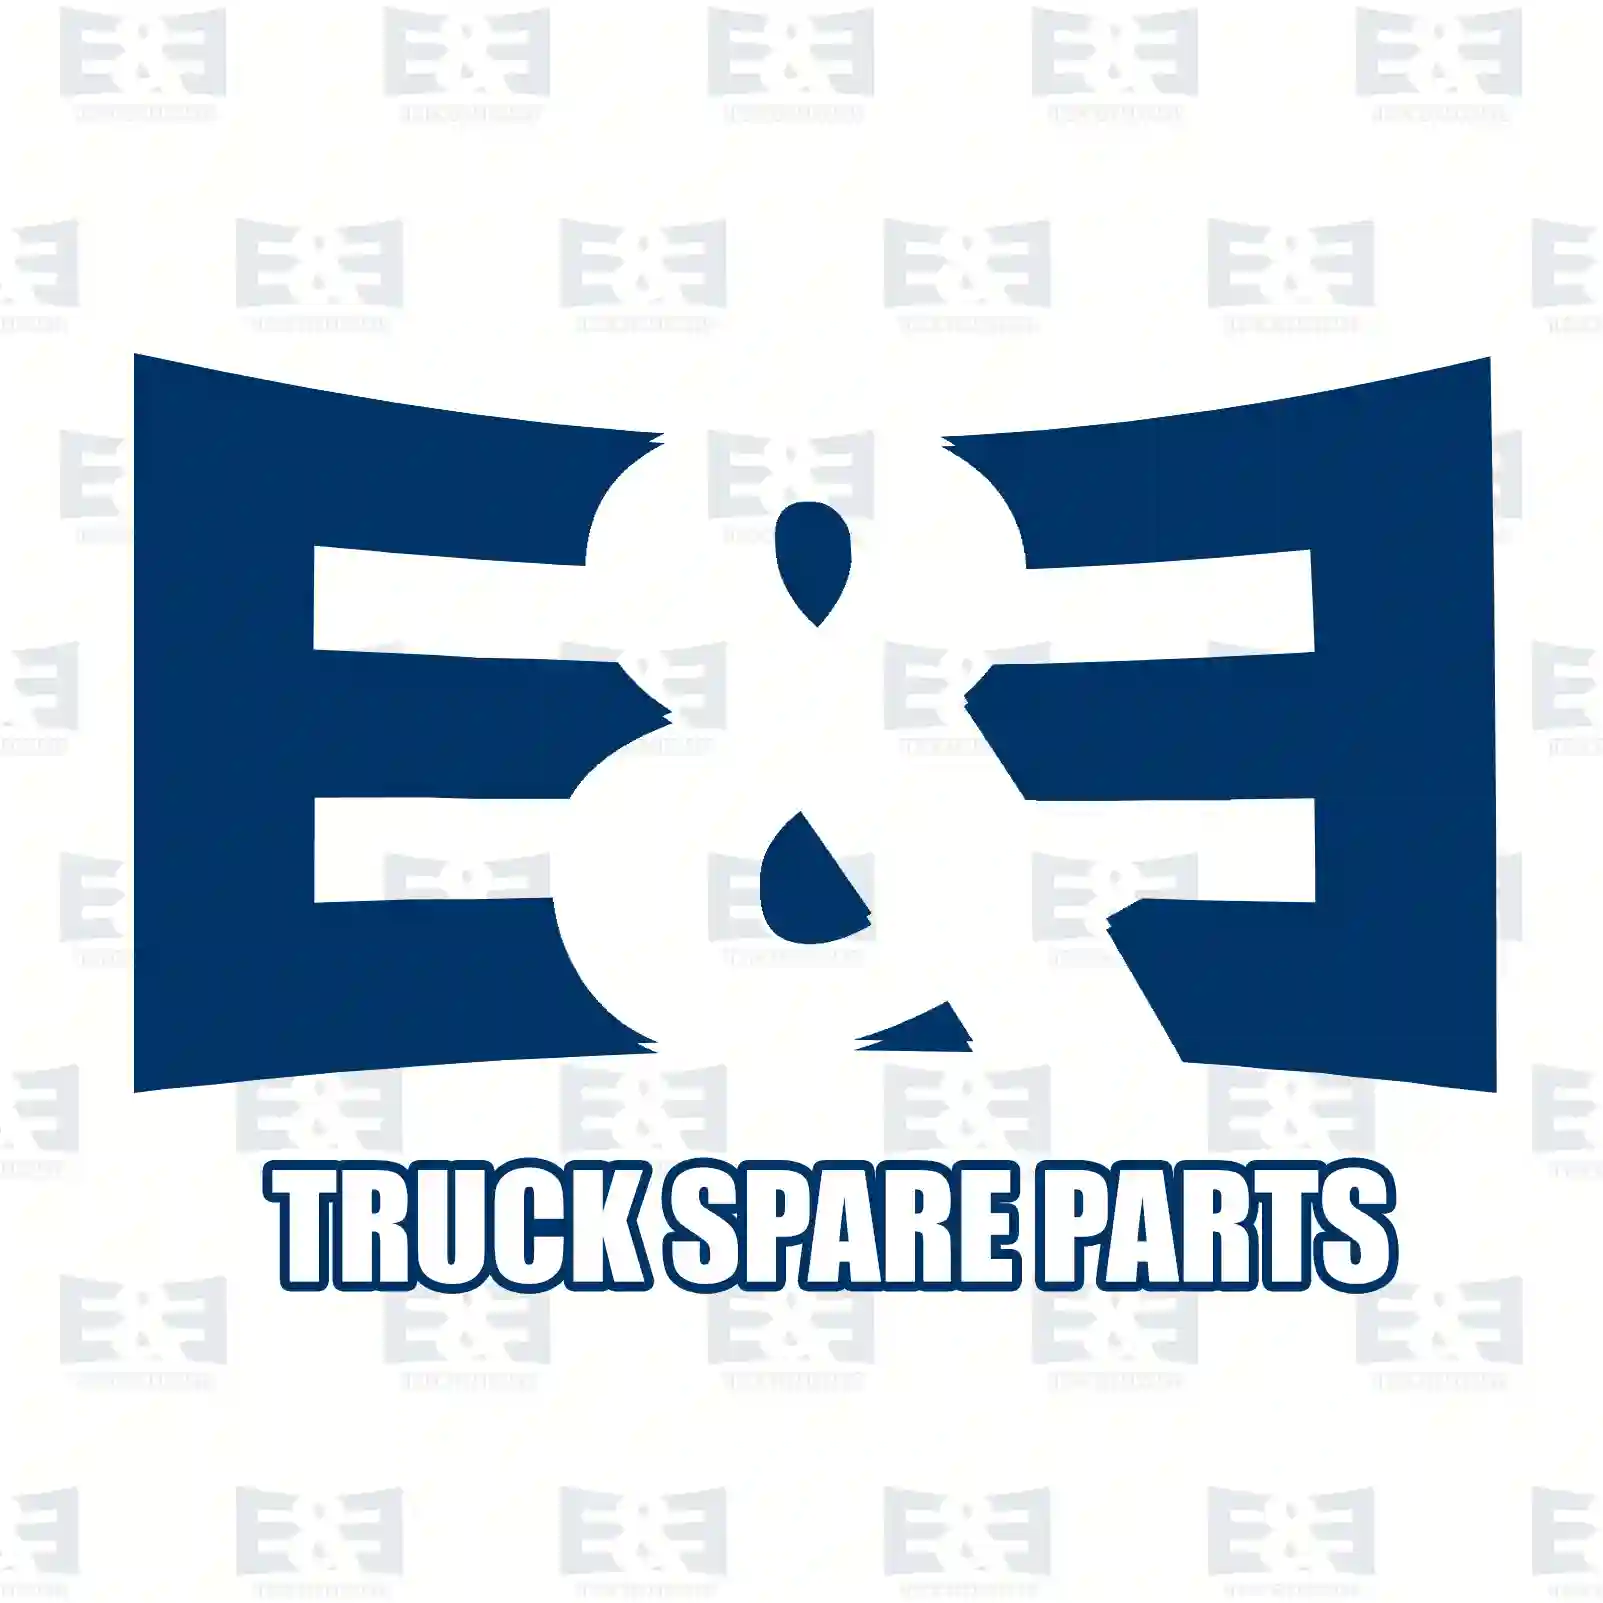 Warning label, 2E2285163, , ||  2E2285163 E&E Truck Spare Parts | Truck Spare Parts, Auotomotive Spare Parts Warning label, 2E2285163, , ||  2E2285163 E&E Truck Spare Parts | Truck Spare Parts, Auotomotive Spare Parts